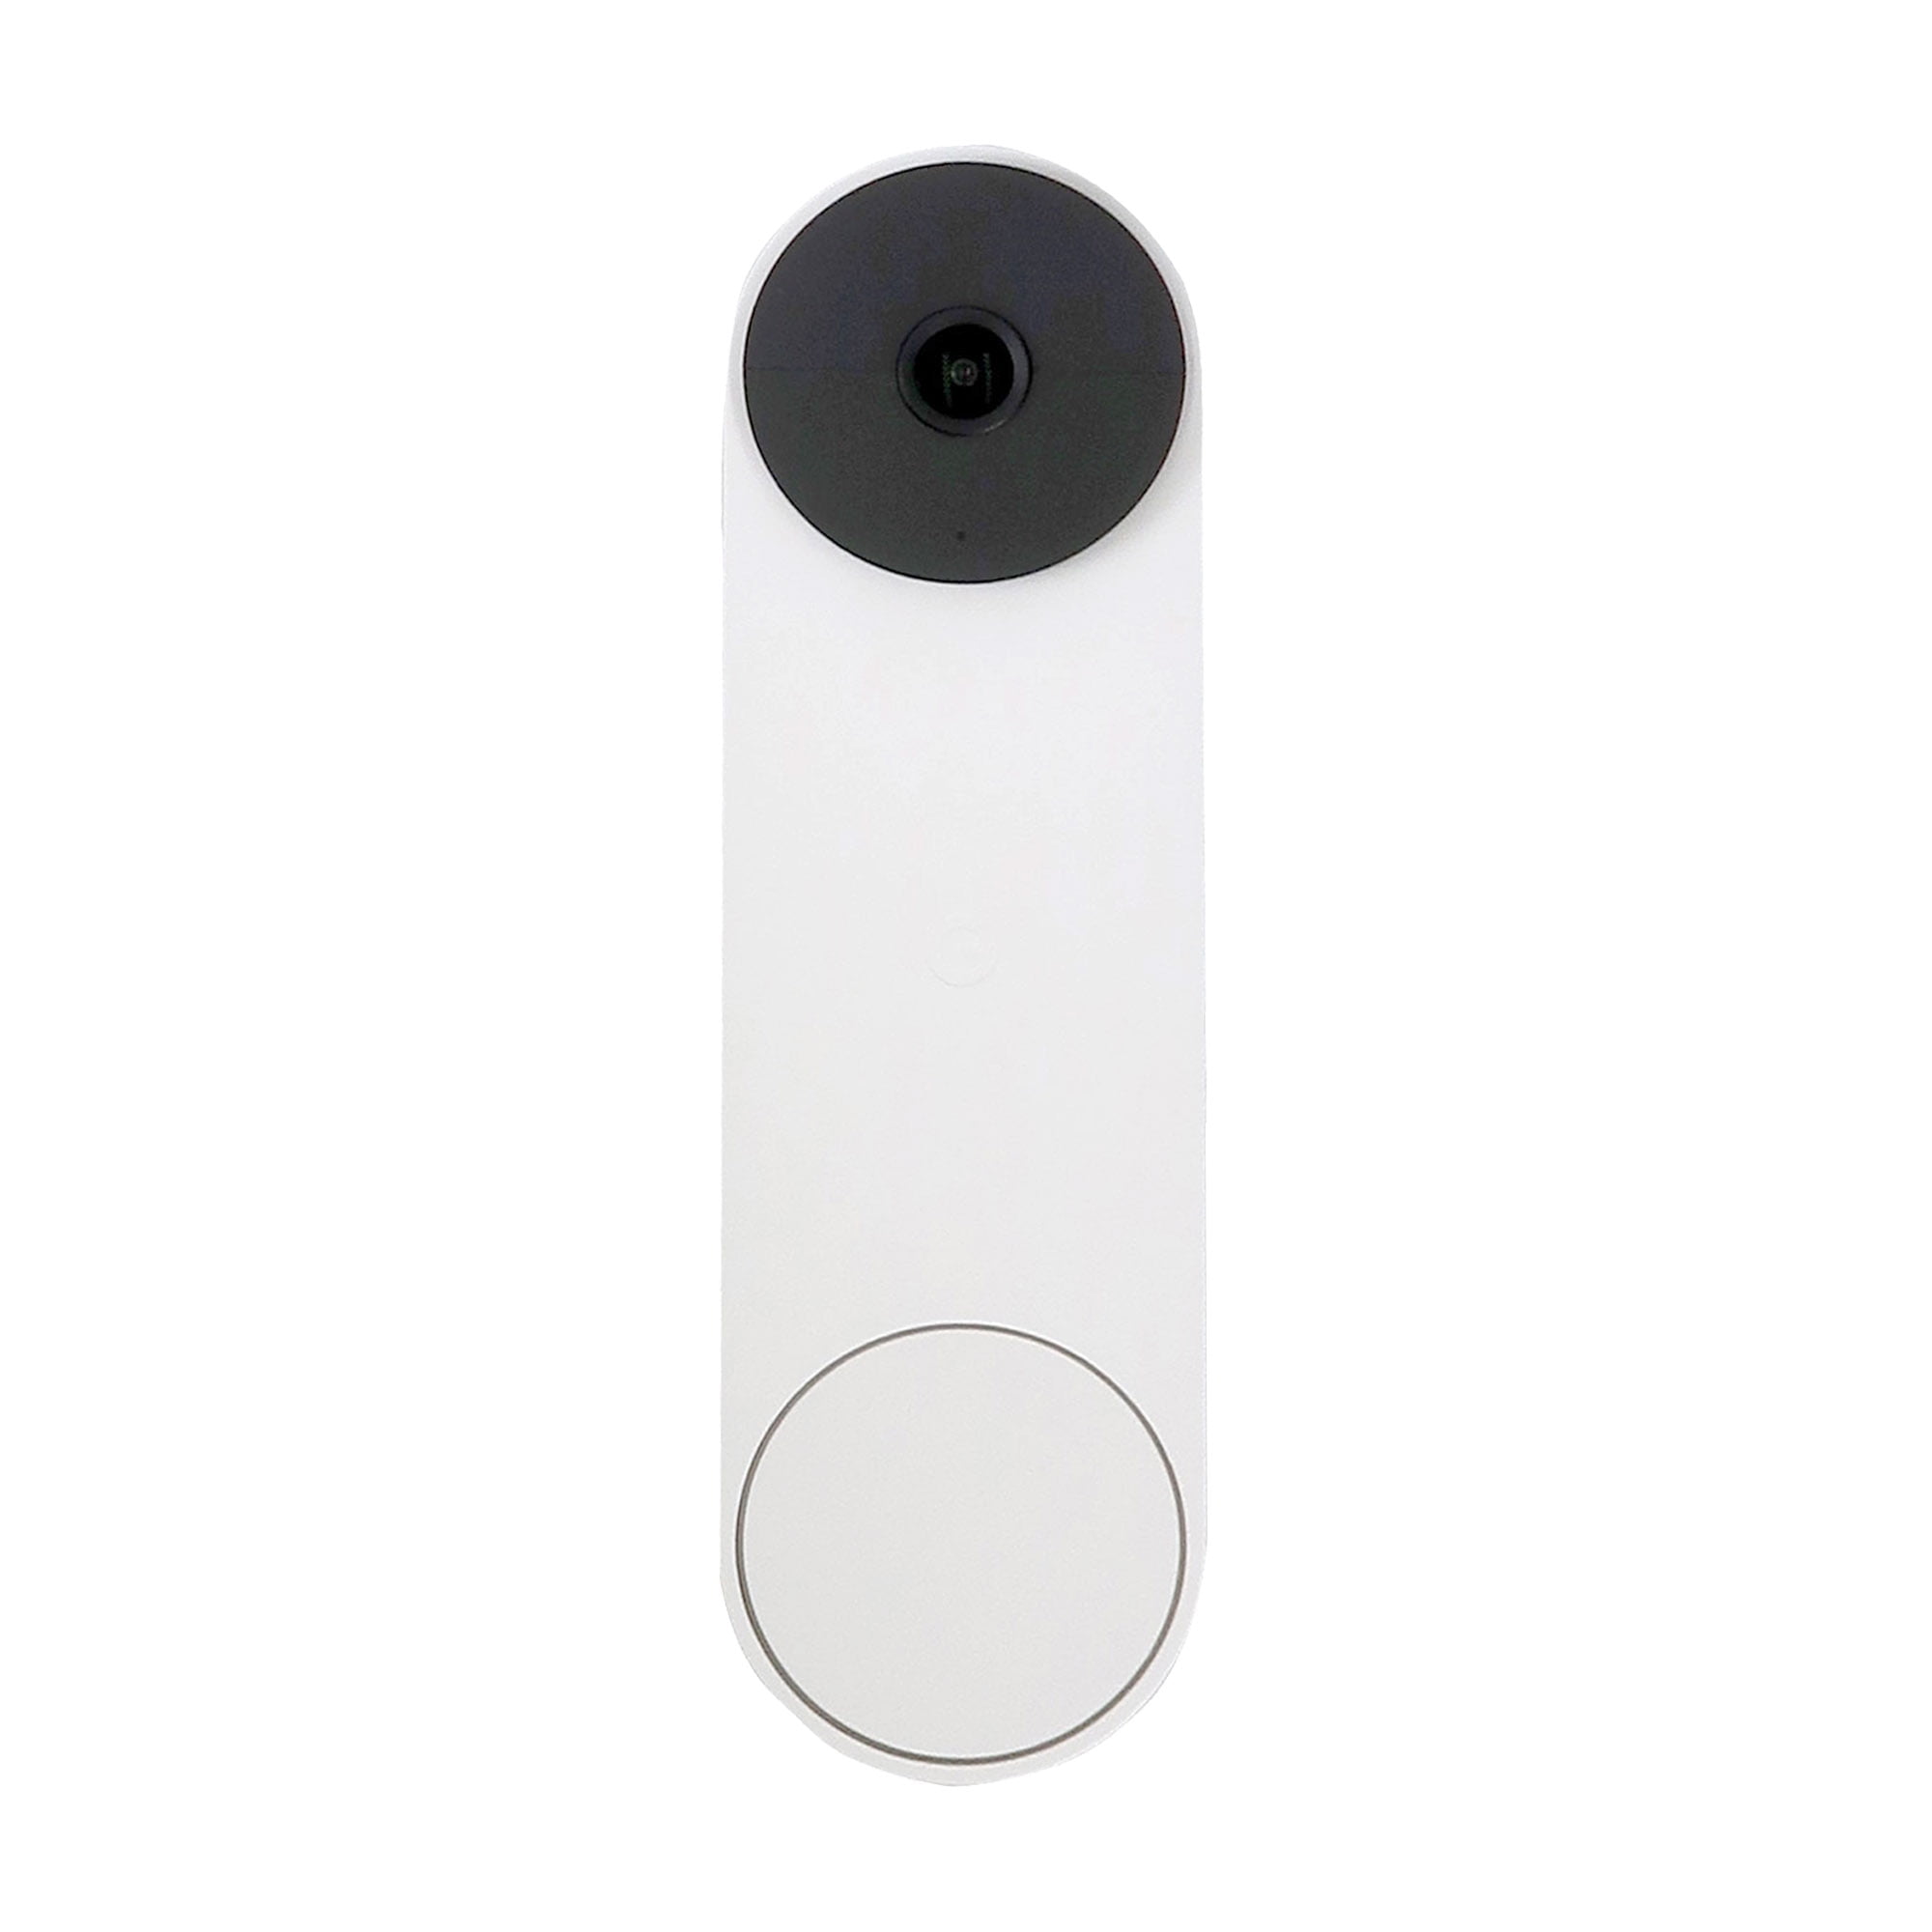 2x Google Nest Video Battery Doorbell (Battery, White) - Walmart.com